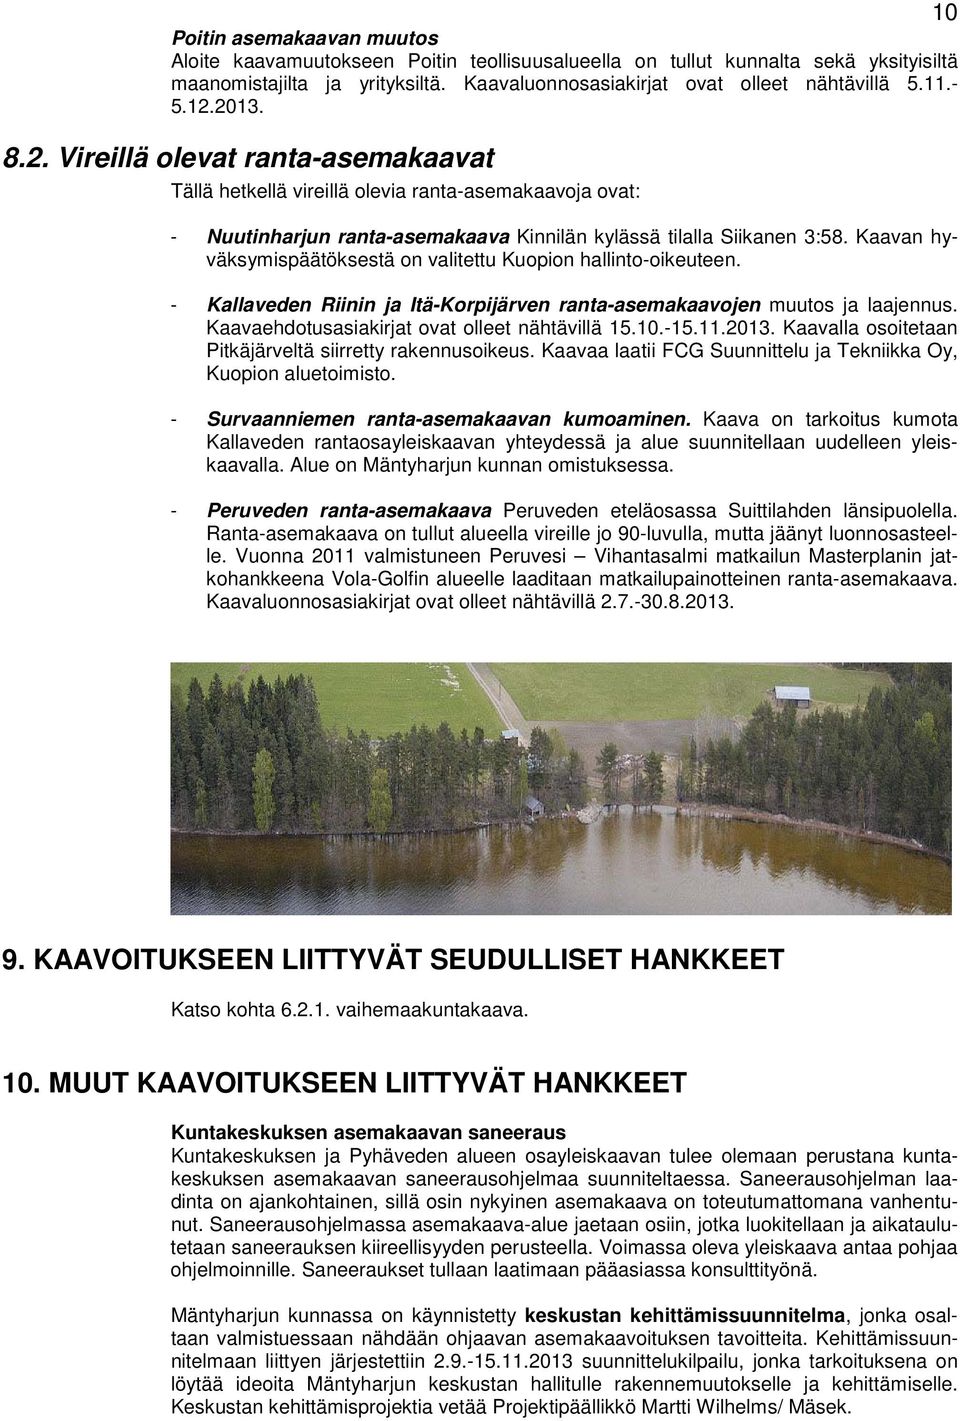 Kaavan hyväksymispäätöksestä on valitettu Kuopion hallinto-oikeuteen. - Kallaveden Riinin ja Itä-Korpijärven ranta-asemakaavojen muutos ja laajennus. Kaavaehdotusasiakirjat ovat olleet nähtävillä 15.